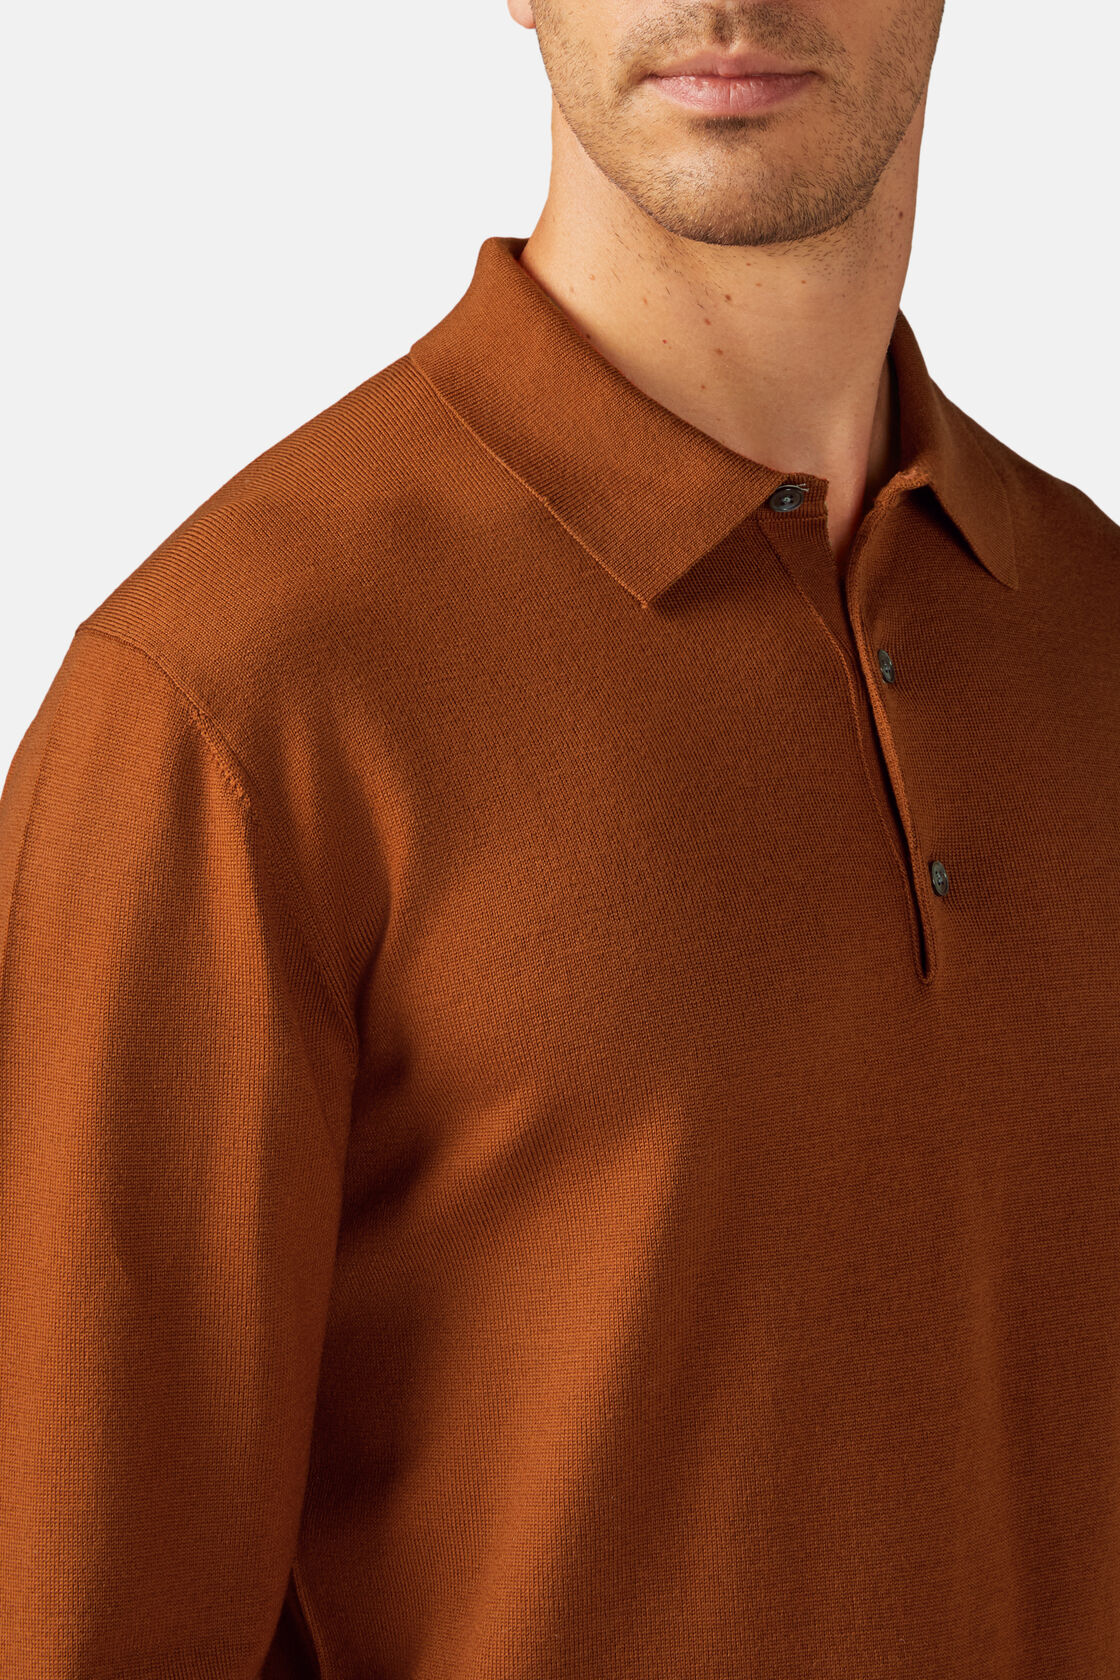 Orange Merino Wool Knitted Polo Shirt, Orange, hi-res